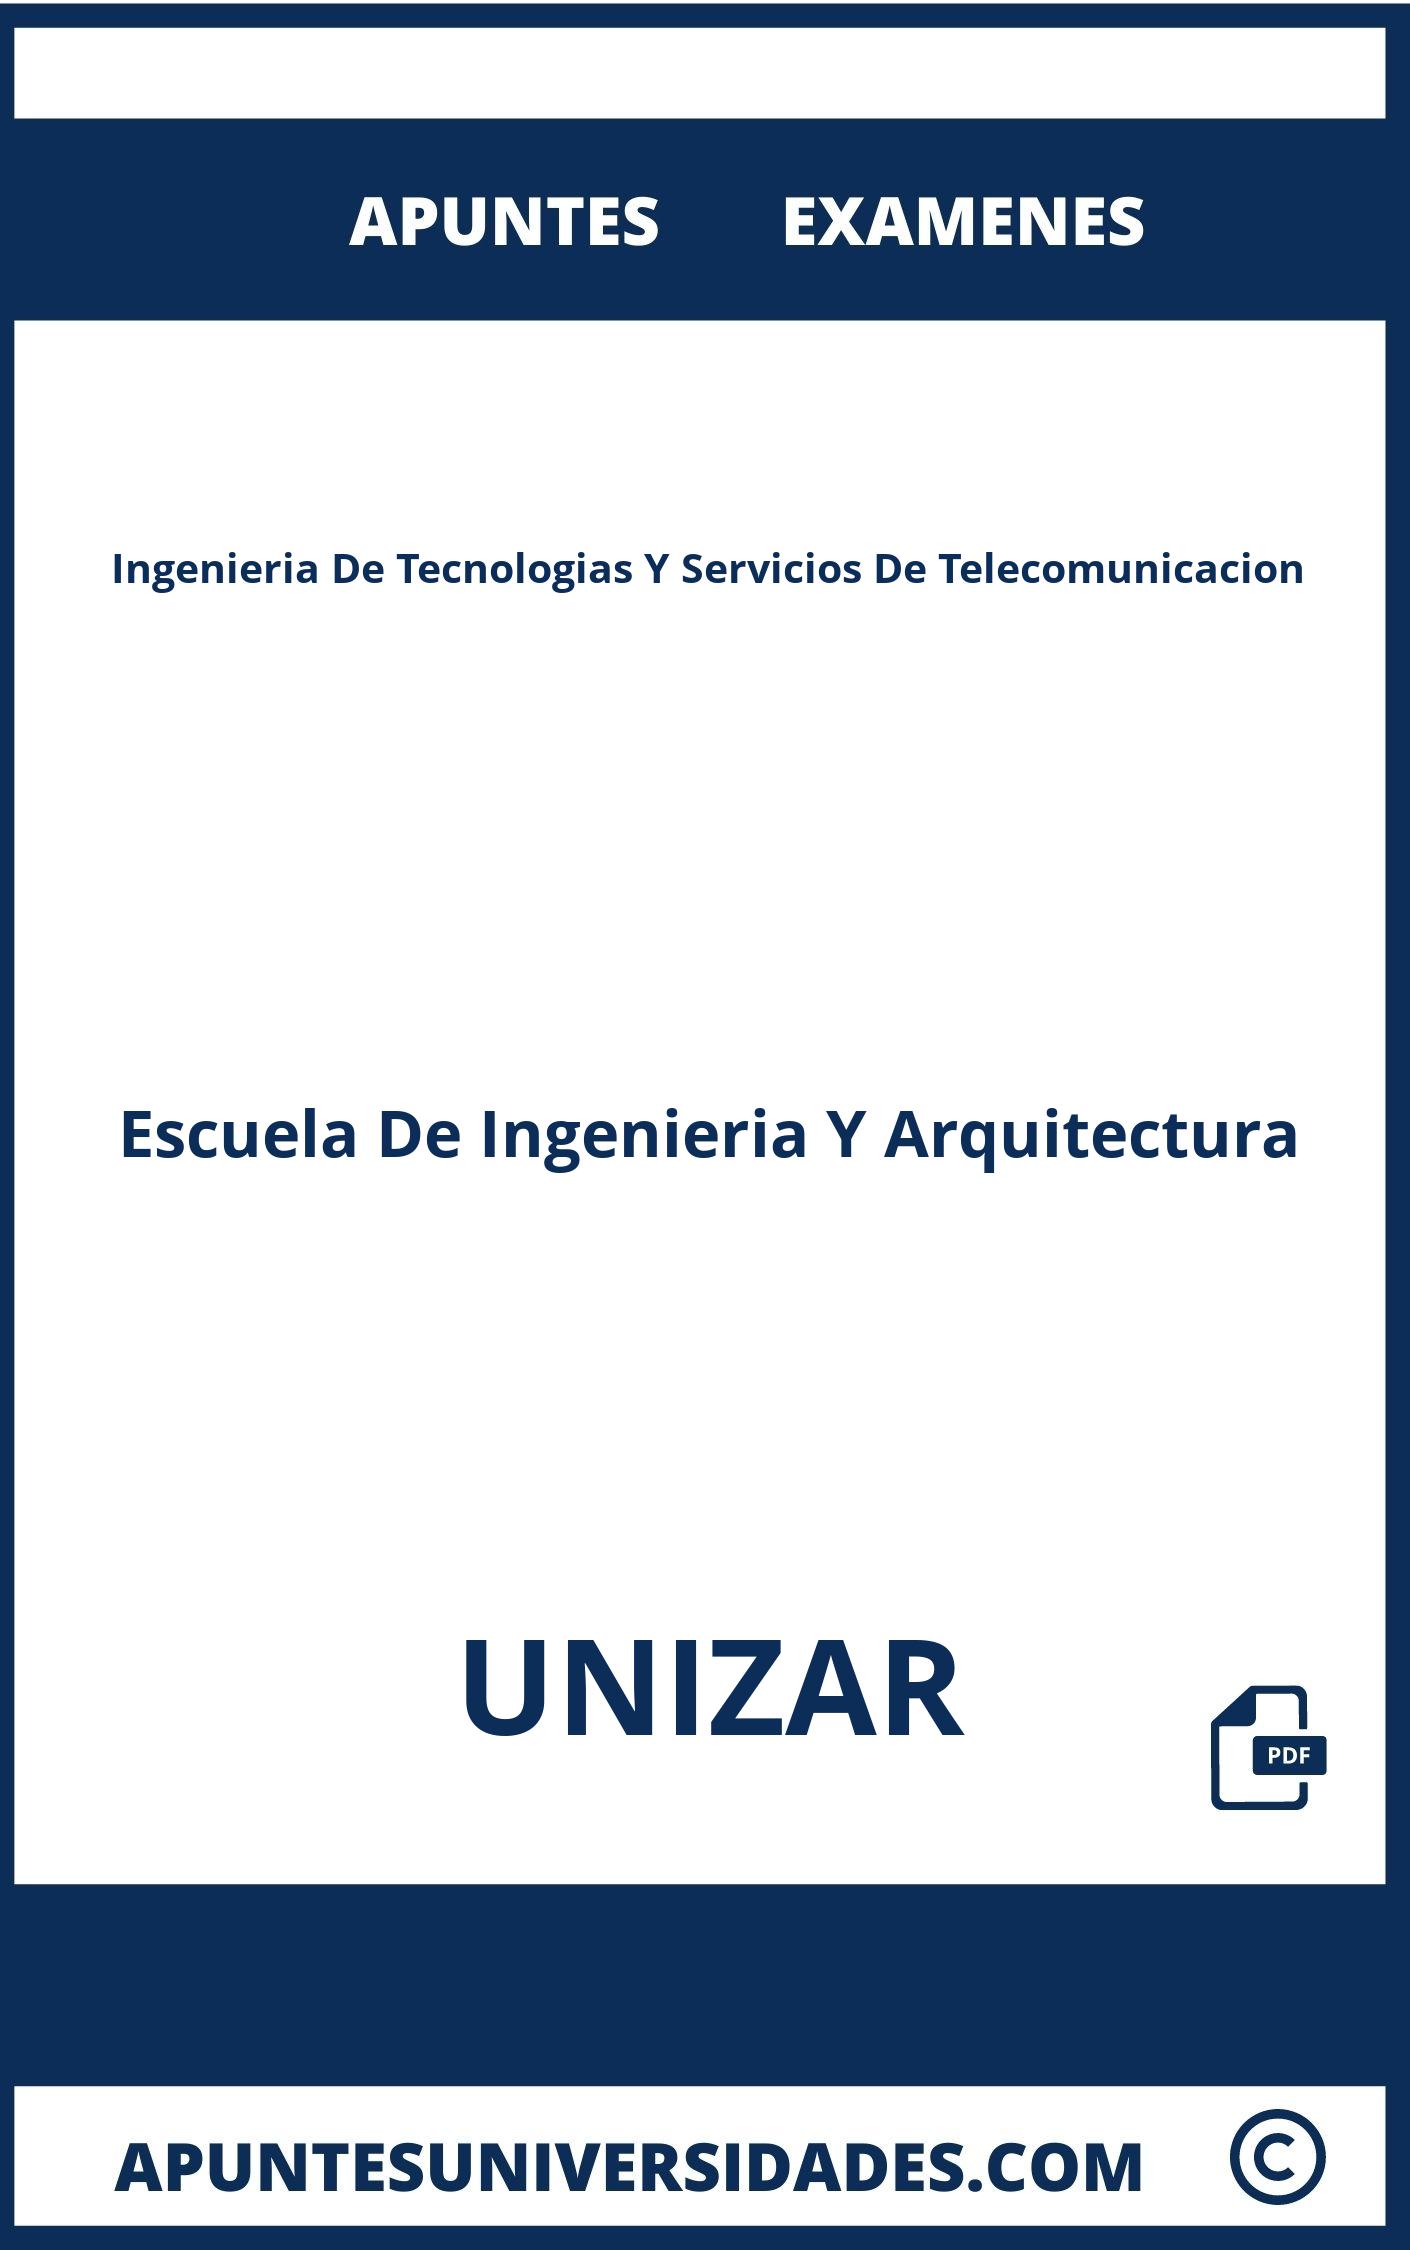 Apuntes y Examenes Ingenieria De Tecnologias Y Servicios De Telecomunicacion UNIZAR